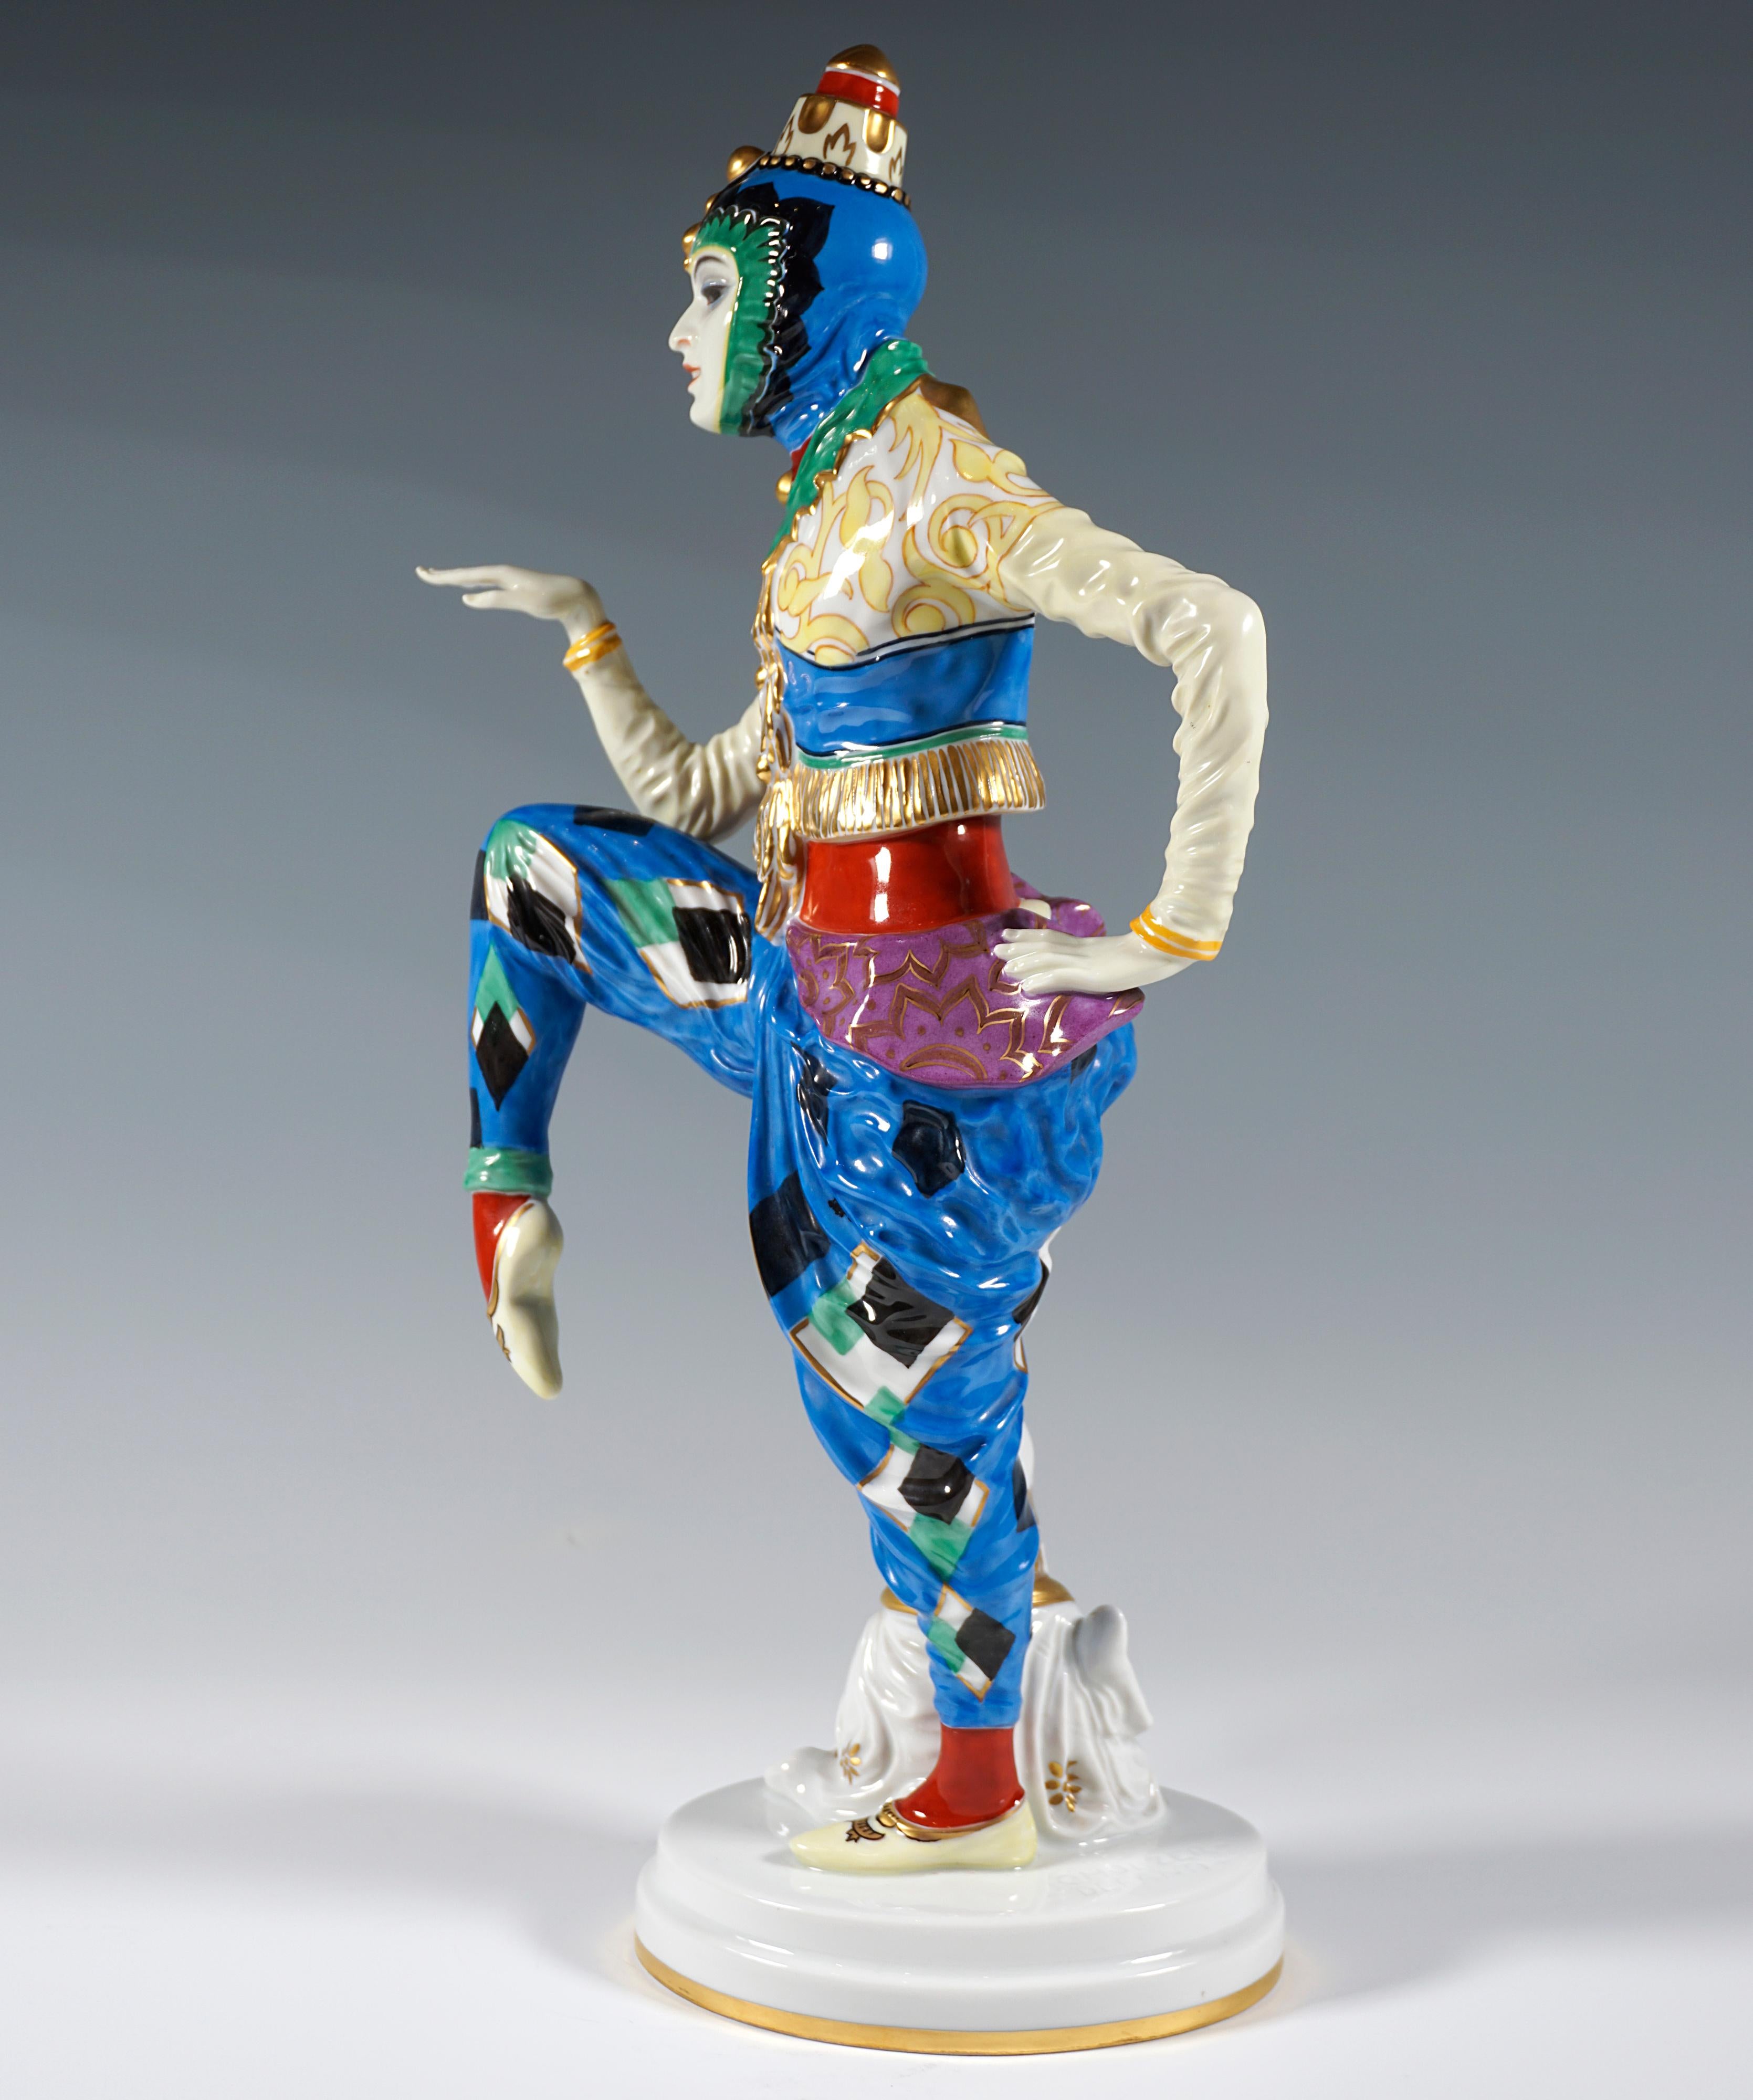 Tänzerin in orientalischem Kostüm mit traditioneller koreanisch anmutender Kopfbedeckung, mit erhobenen, angewinkelten Beinen und Armen in Tanzpose, eine chinesische Pagode an ihr Bein gelehnt. Die Figur ist reich in leuchtenden Farben und Gold